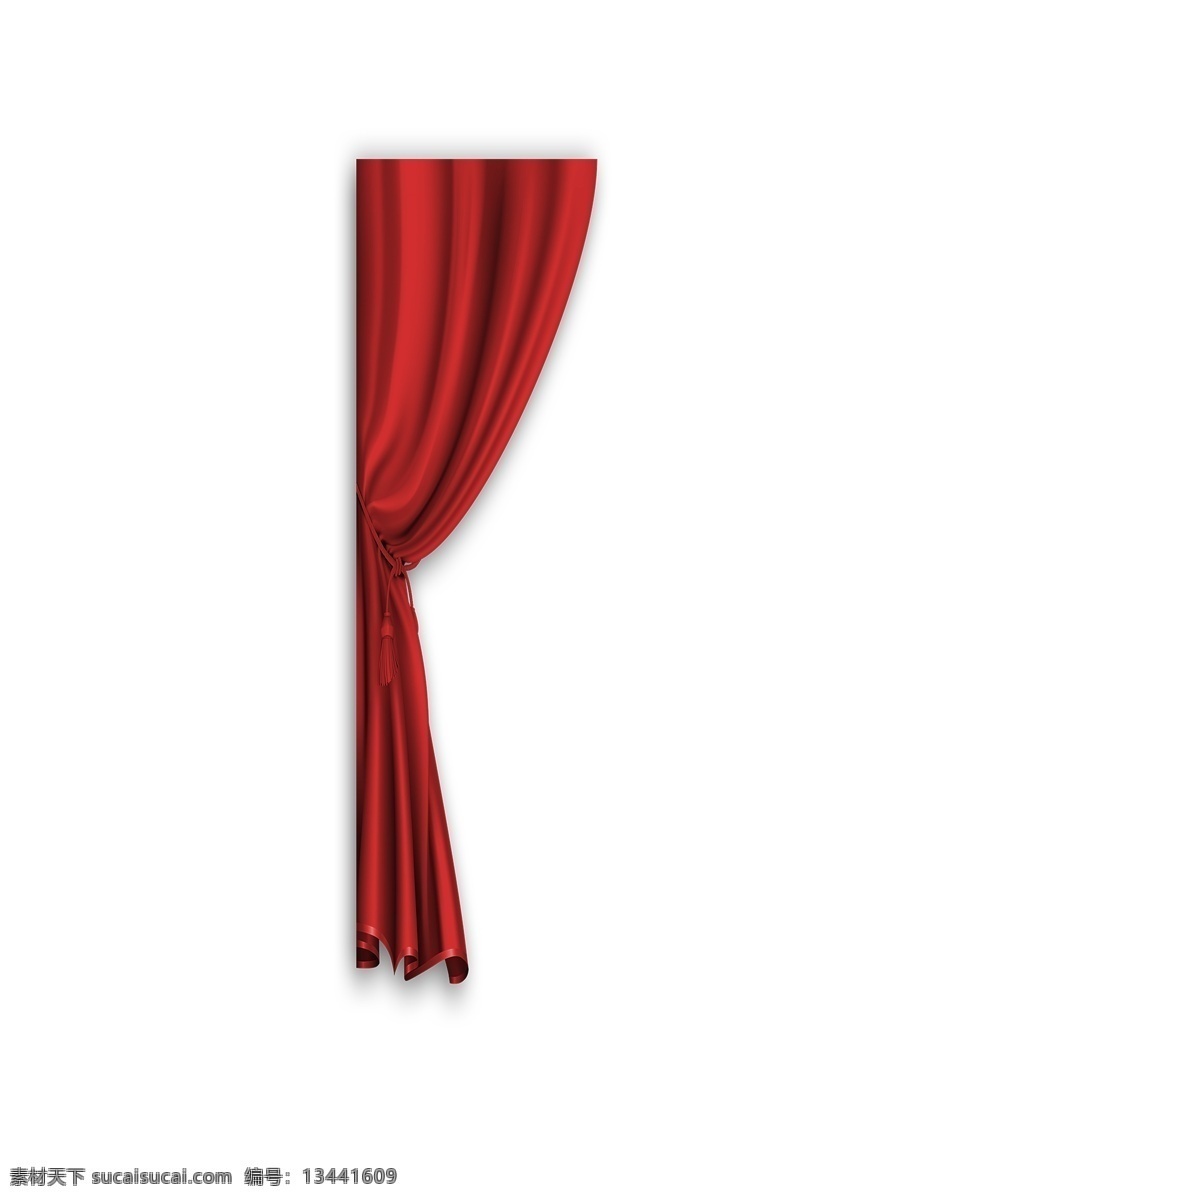 红色窗帘 舞台幕布 淘宝 天猫 电商 卡通插图 创意卡通下载 插图 png图下载